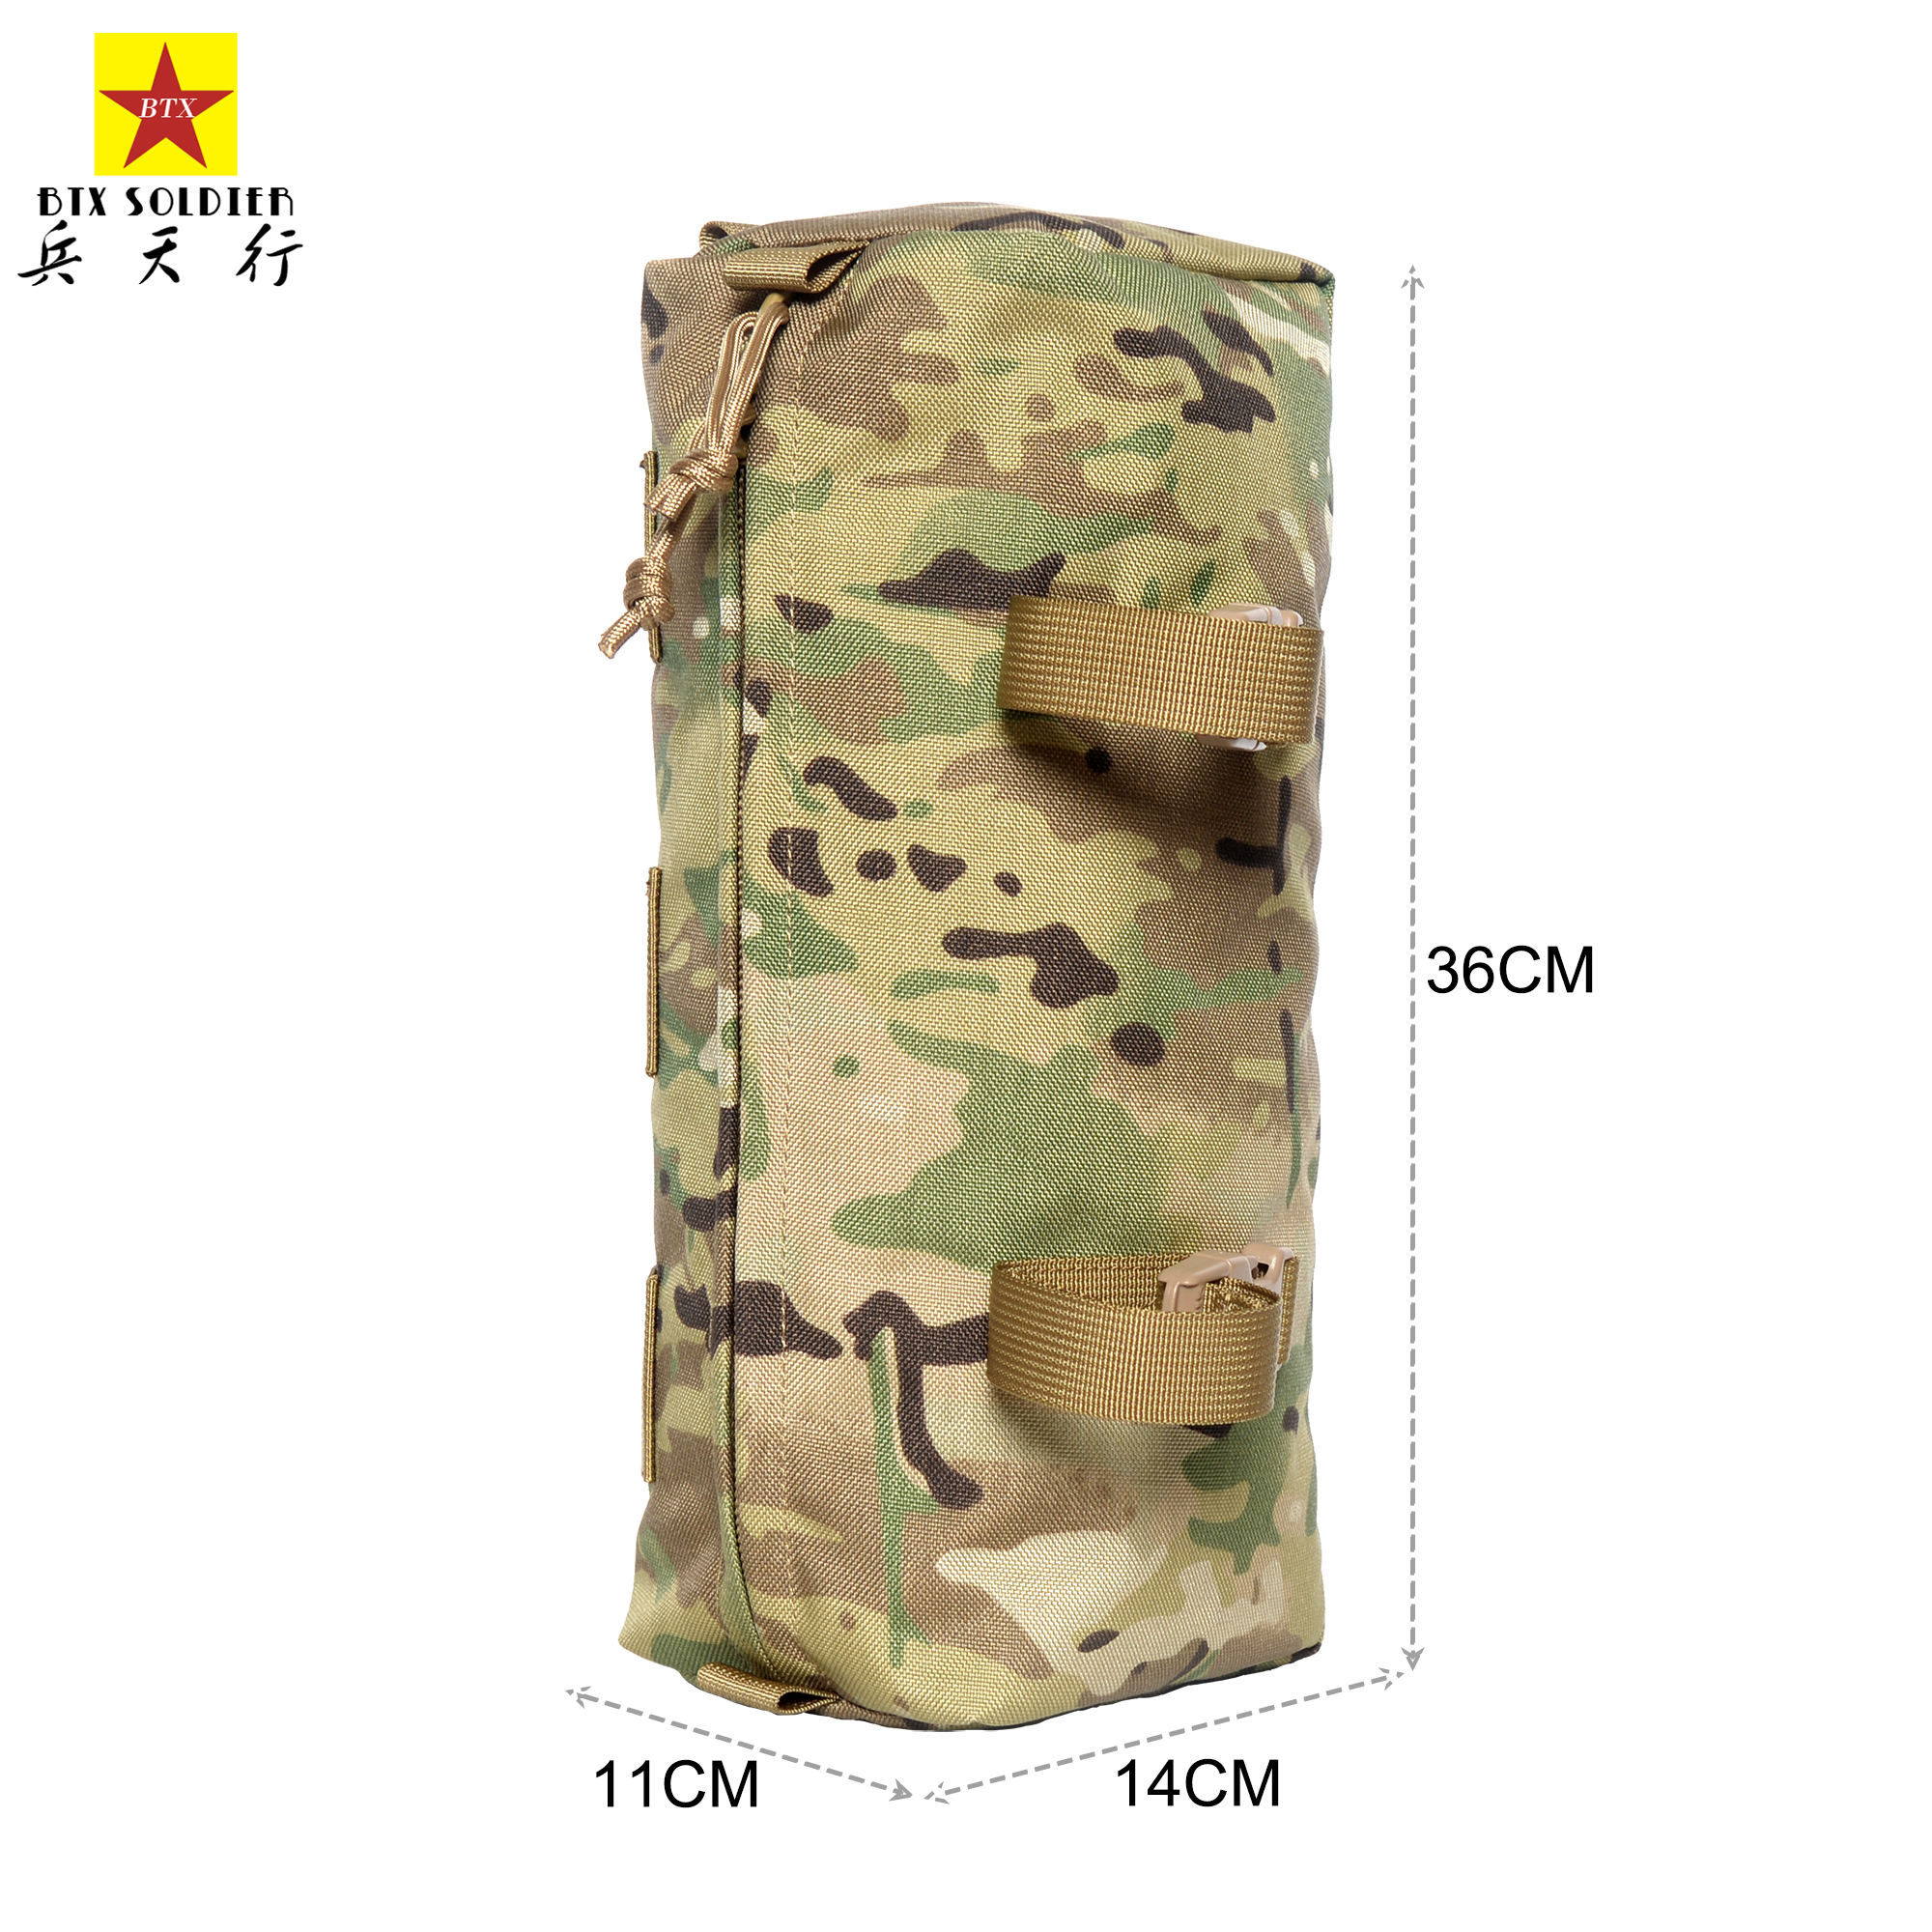 兵天行 战术多功能侧包附件包容量扩展副包户外腰包防水增量模组